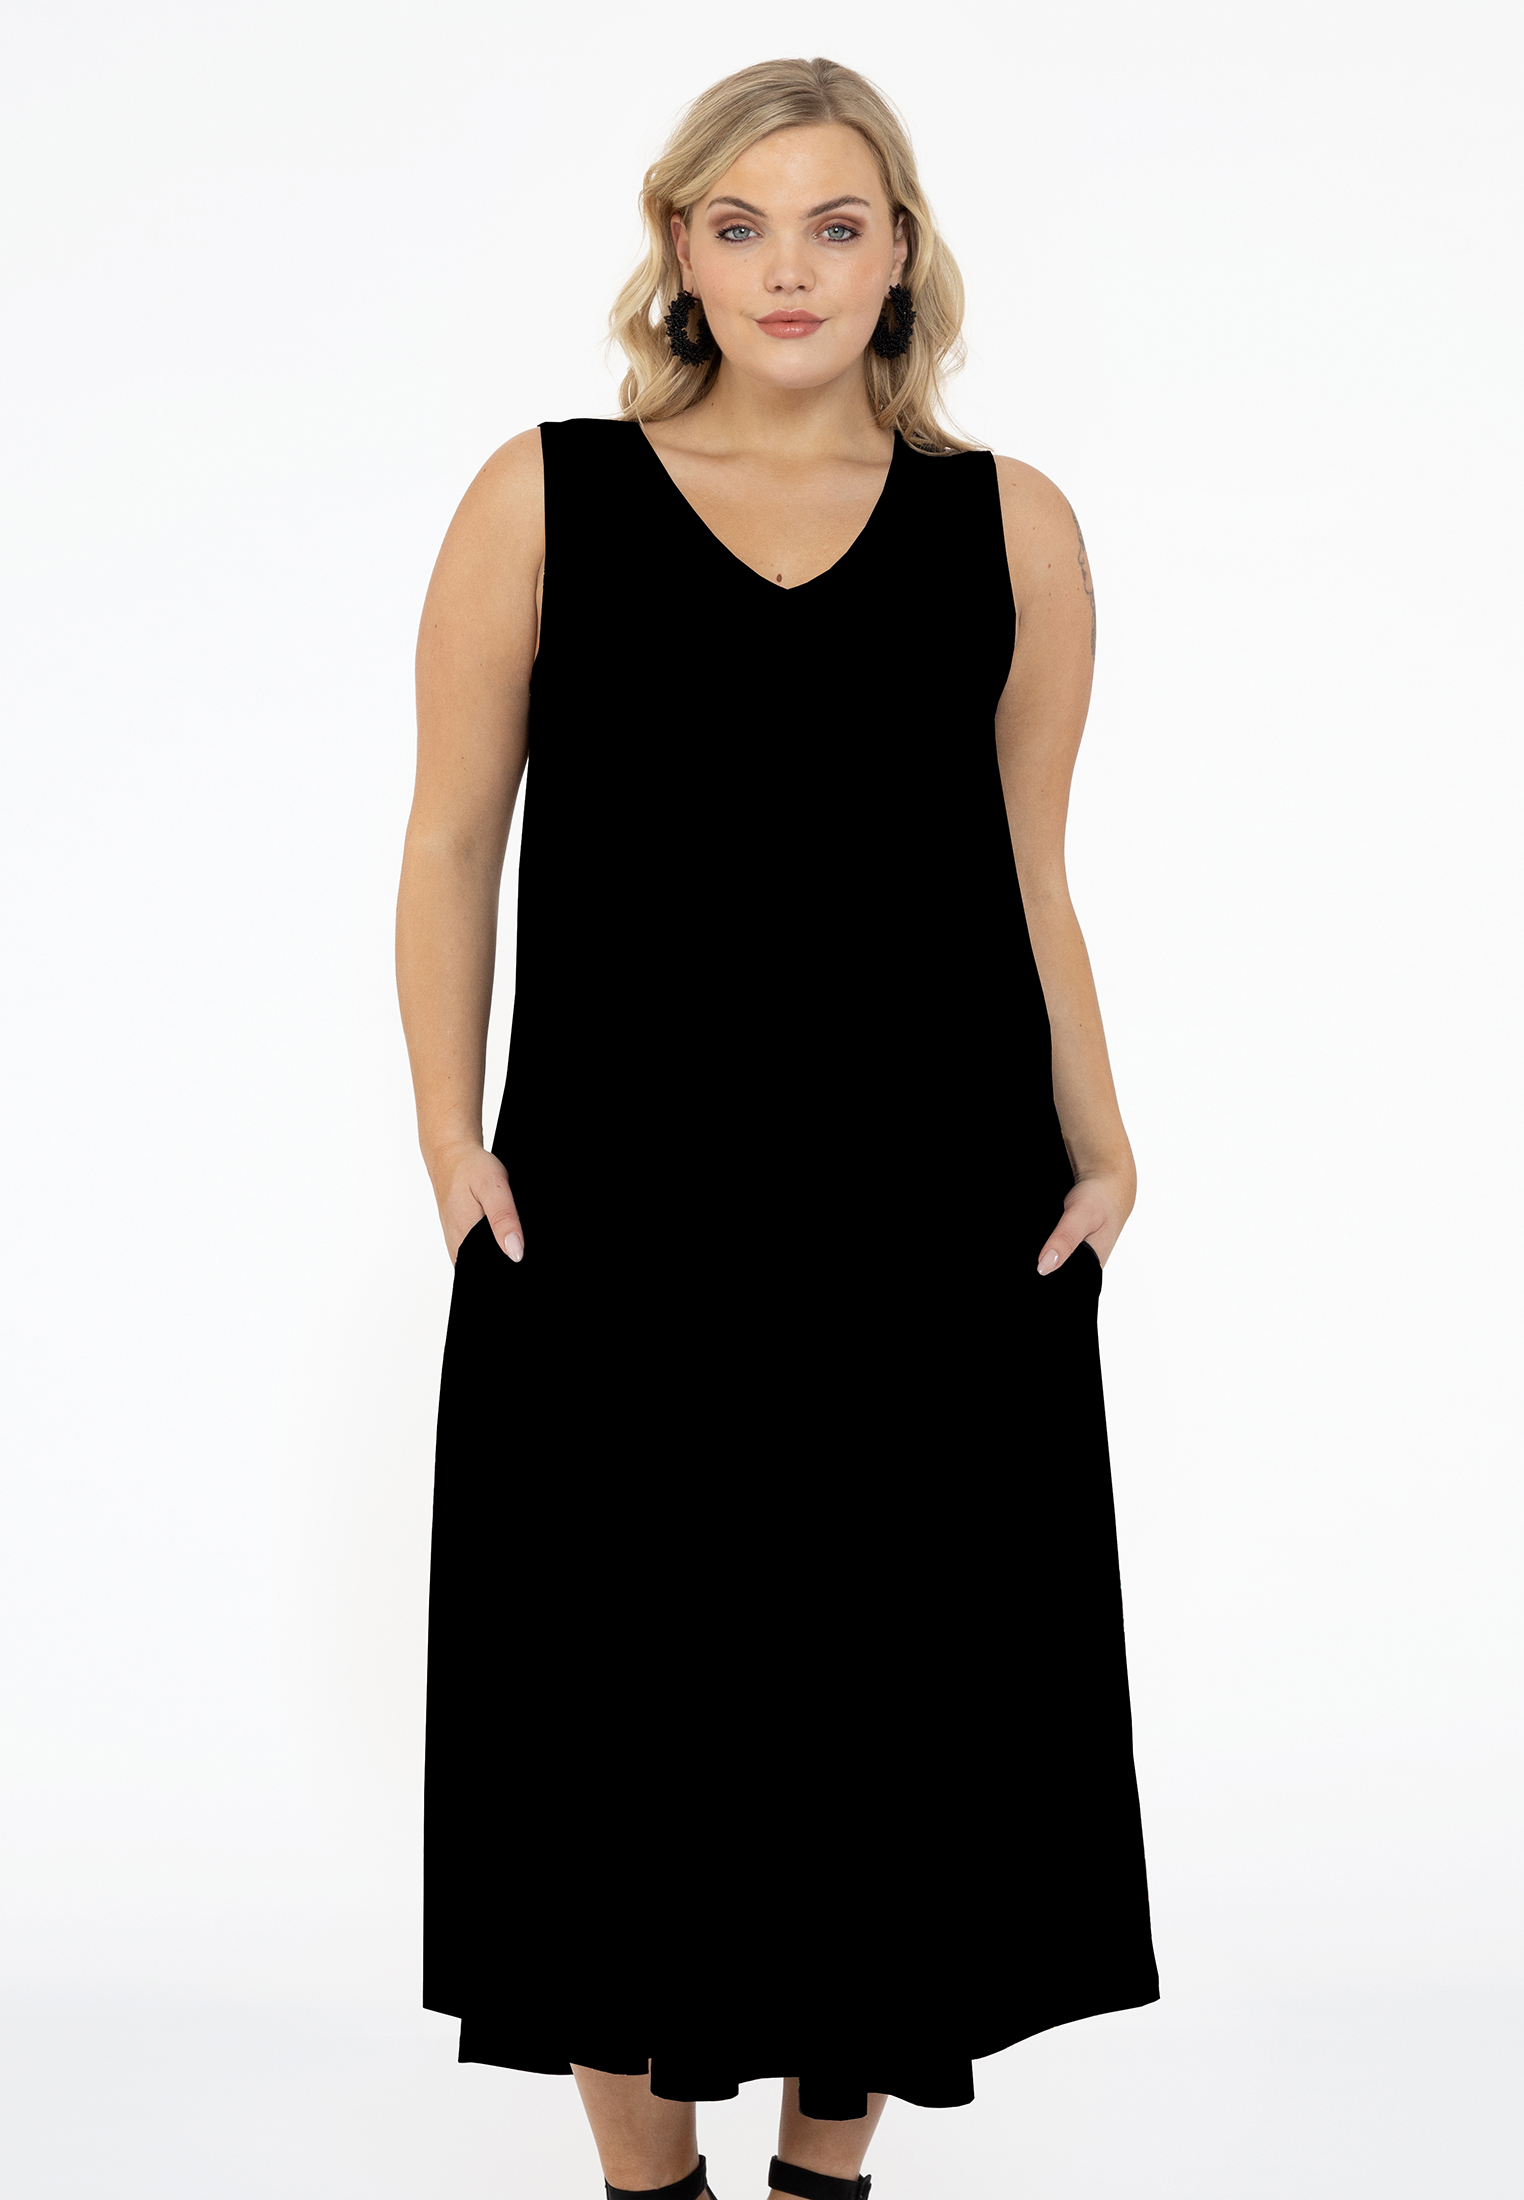 Mouwloze jurk A-lijn DOLCE 58/60 black